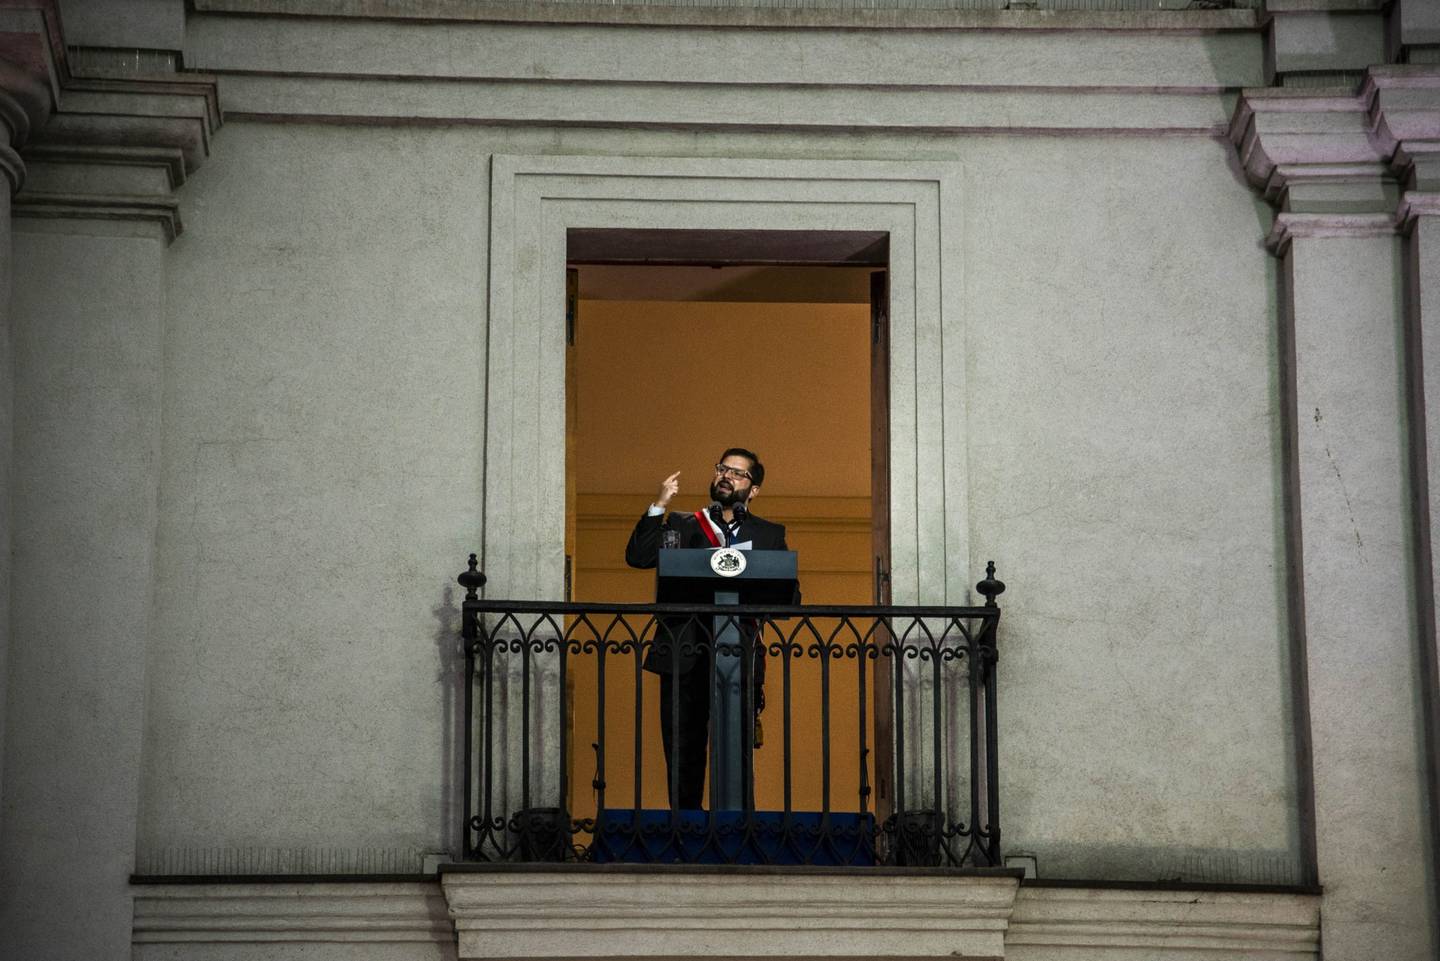 El presidente Boric habla durante su ceremonia de toma de posesión en el palacio presidencial de La Moneda, el 11 de marzo.dfd